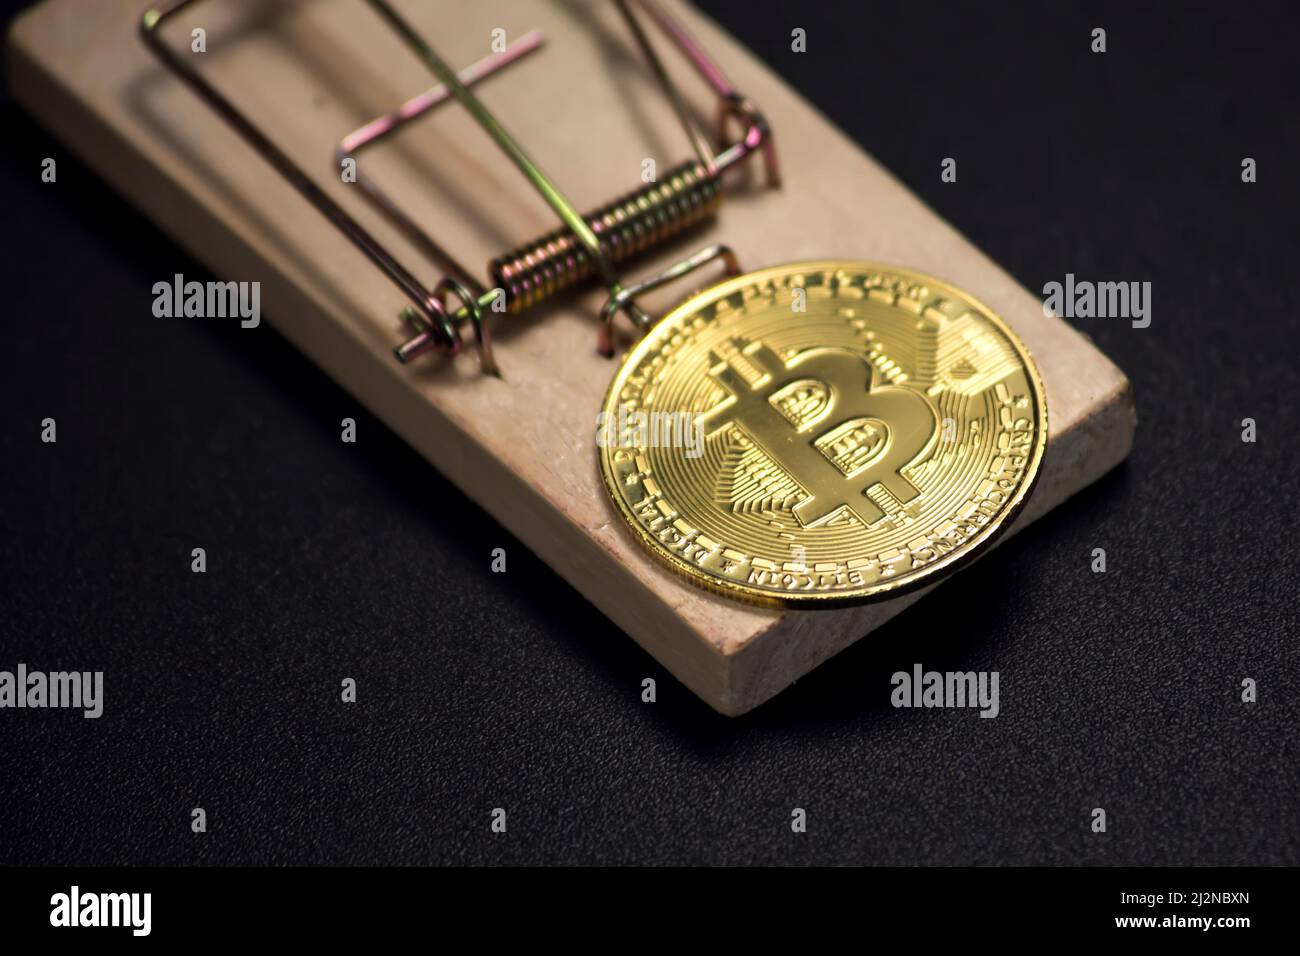 Bitcoin sur un mousetrap. Risques et dangers liés à l'investissement dans la crypto-monnaie Banque D'Images